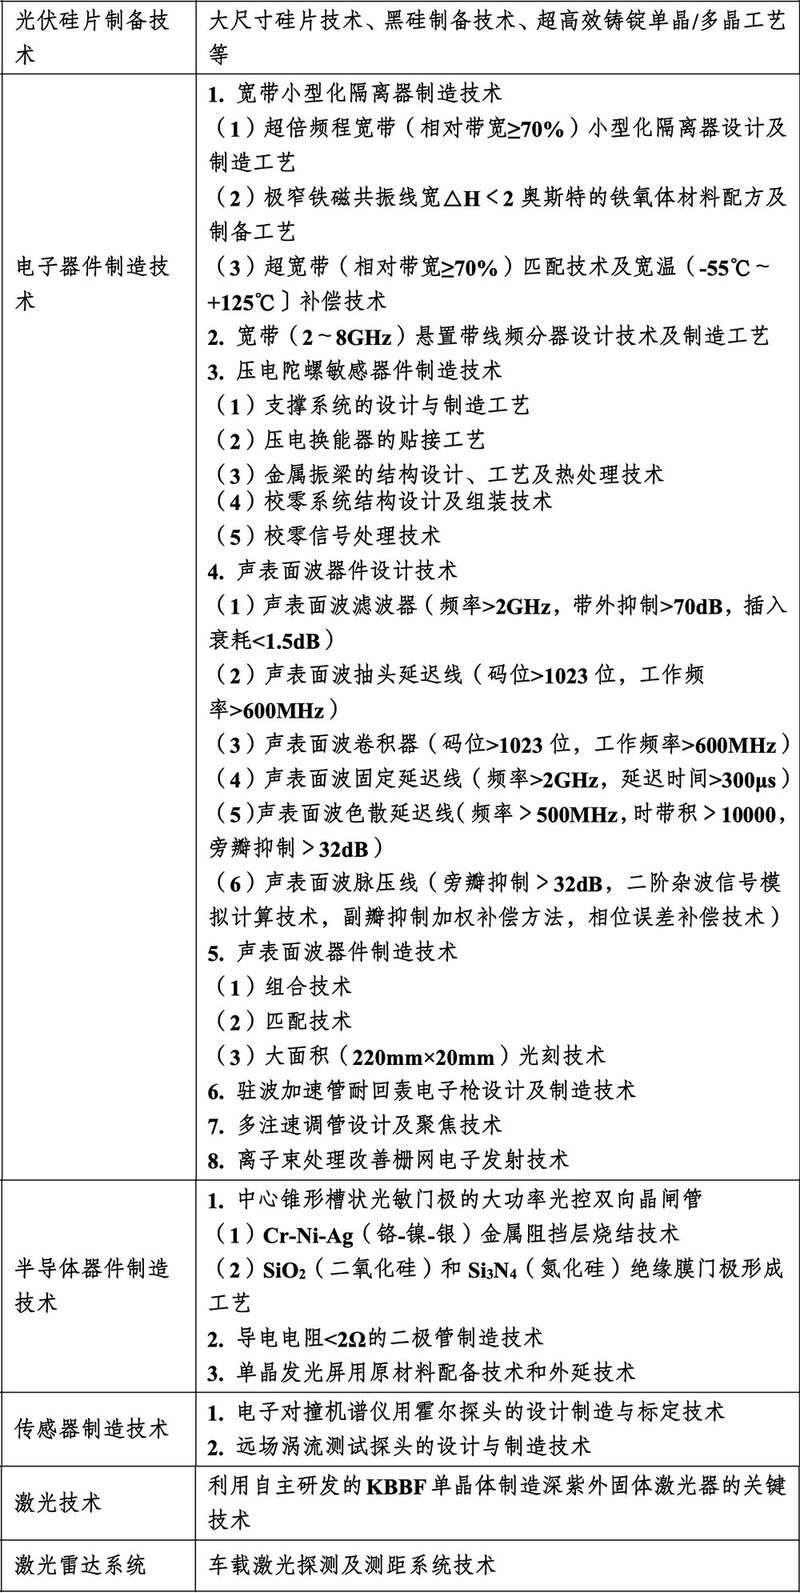 商务部会同科技部等部门关于《中国禁止出口限制出口技术目录》